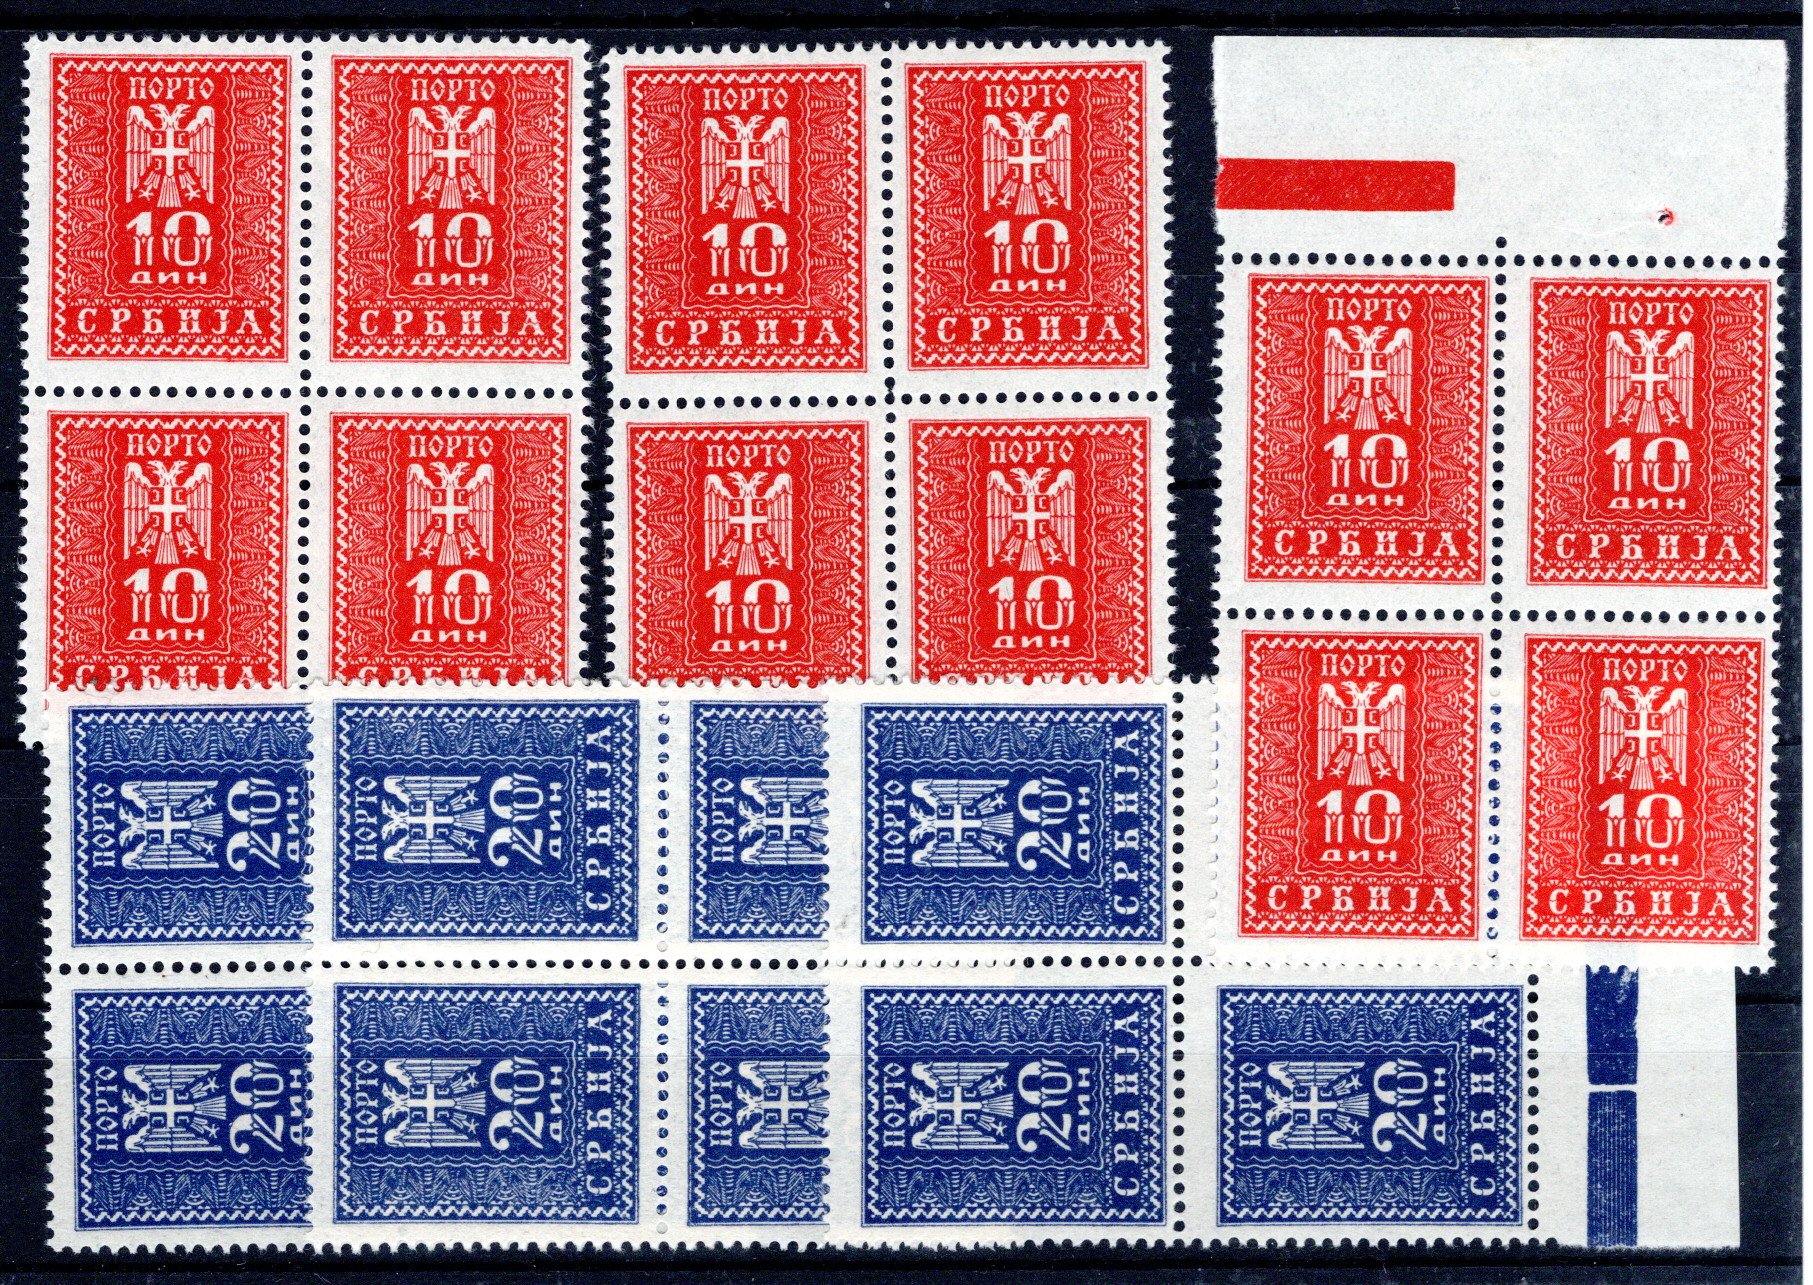 Lot 726 - europe Iceland -  Georg Bühler Briefmarken Auktionen GmbH Georg Bühler 336 auction